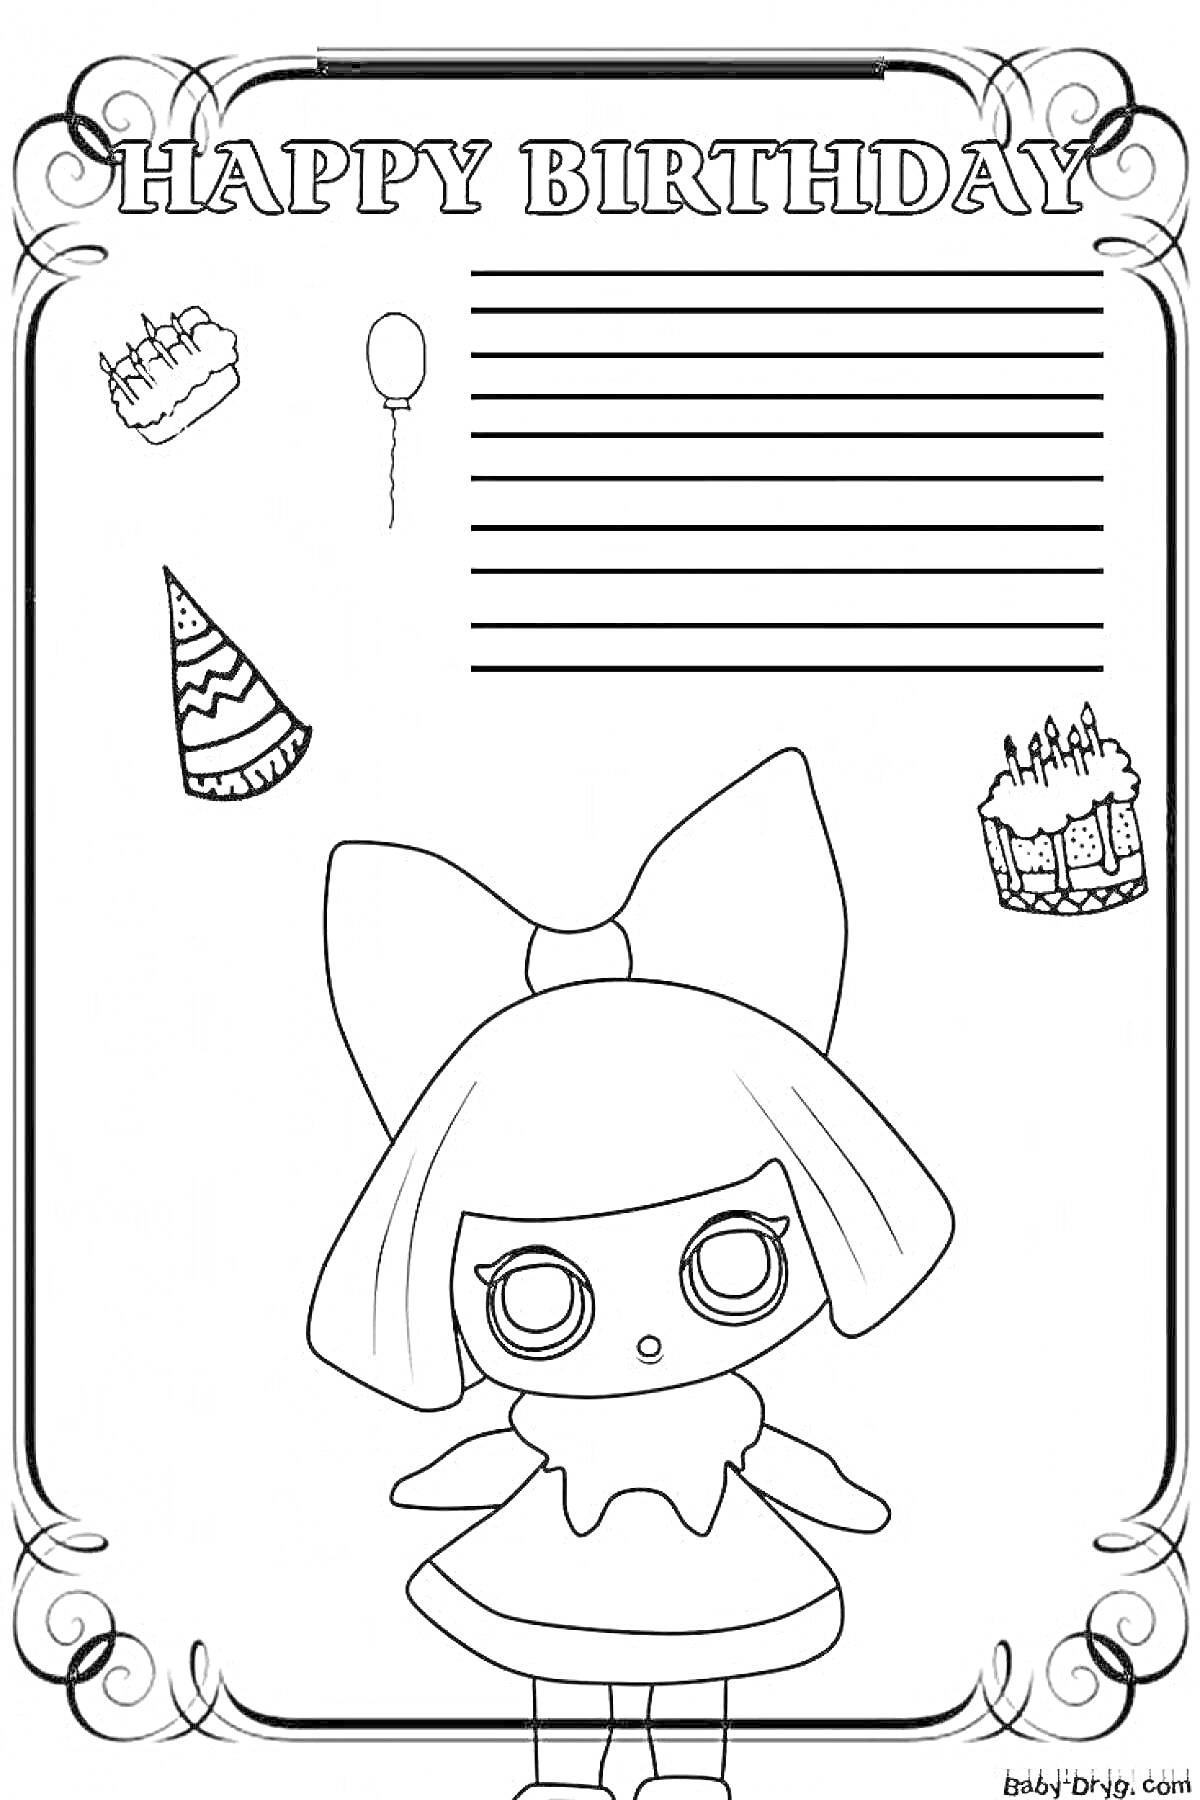 Раскраска Happy Birthday с куклой, тортами, шариком и шапочкой